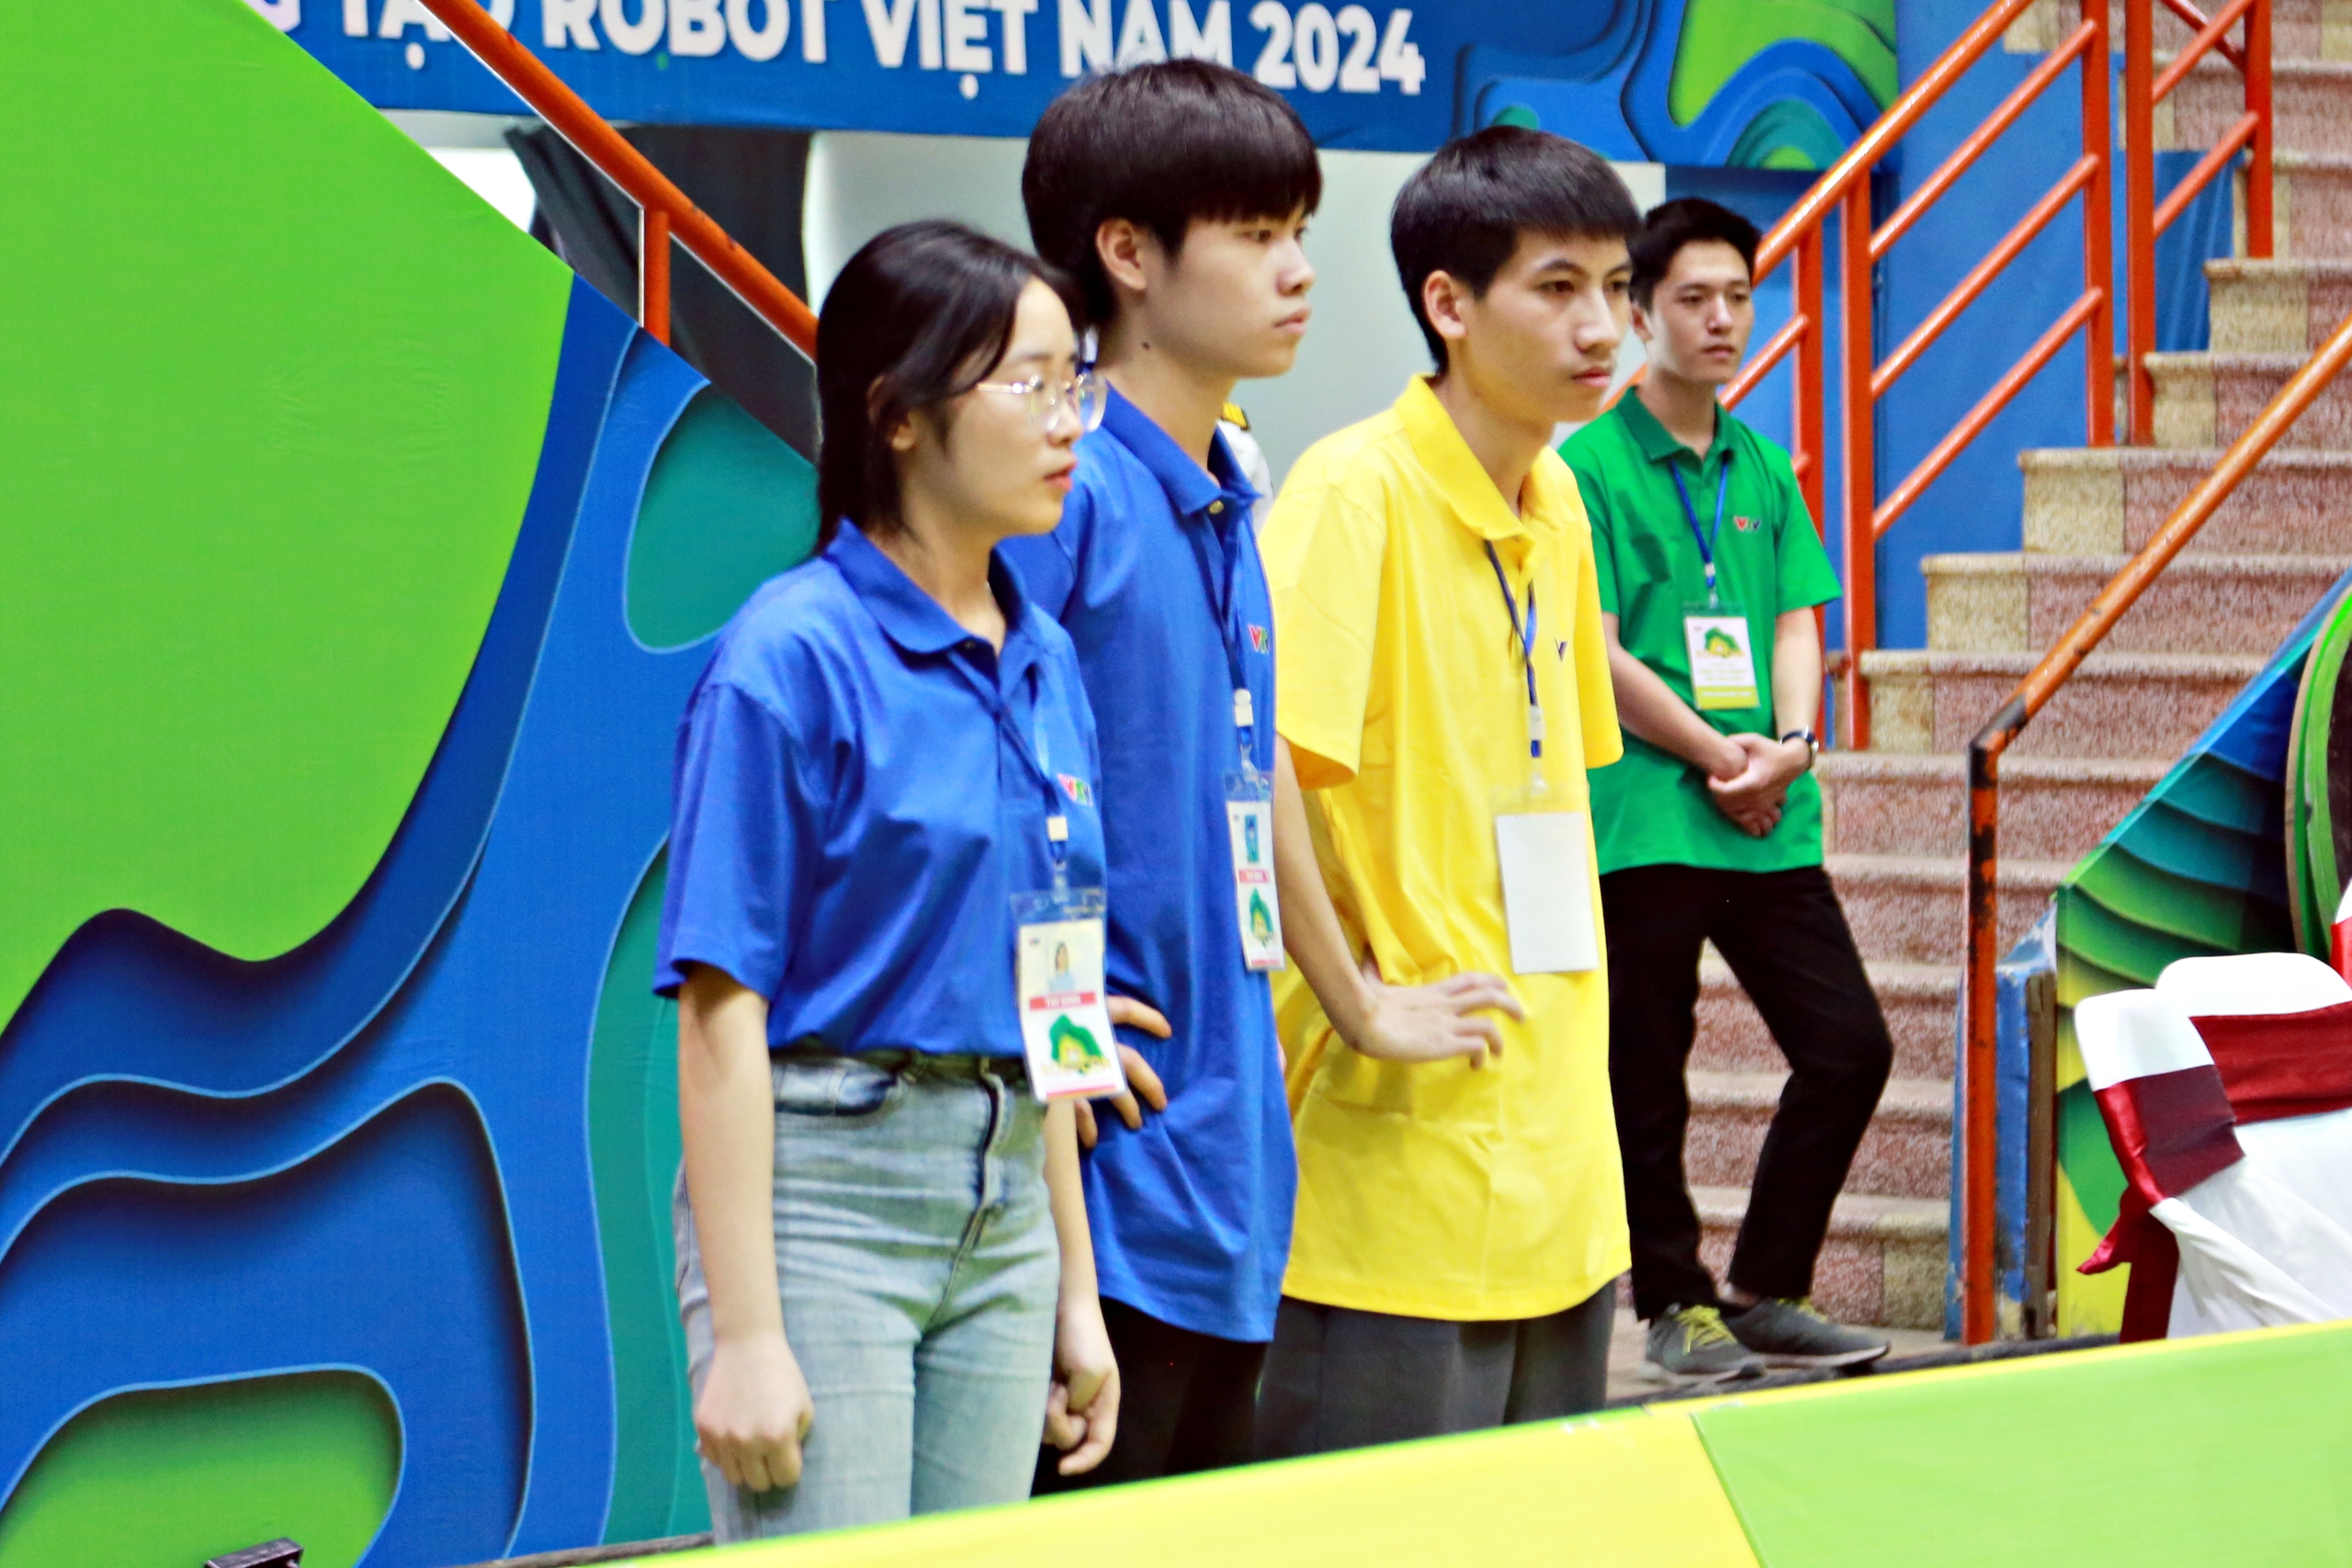 Những chiến thắng tuyệt đối "Mùa vàng" đầu tiên tại Robocon Việt Nam 2024